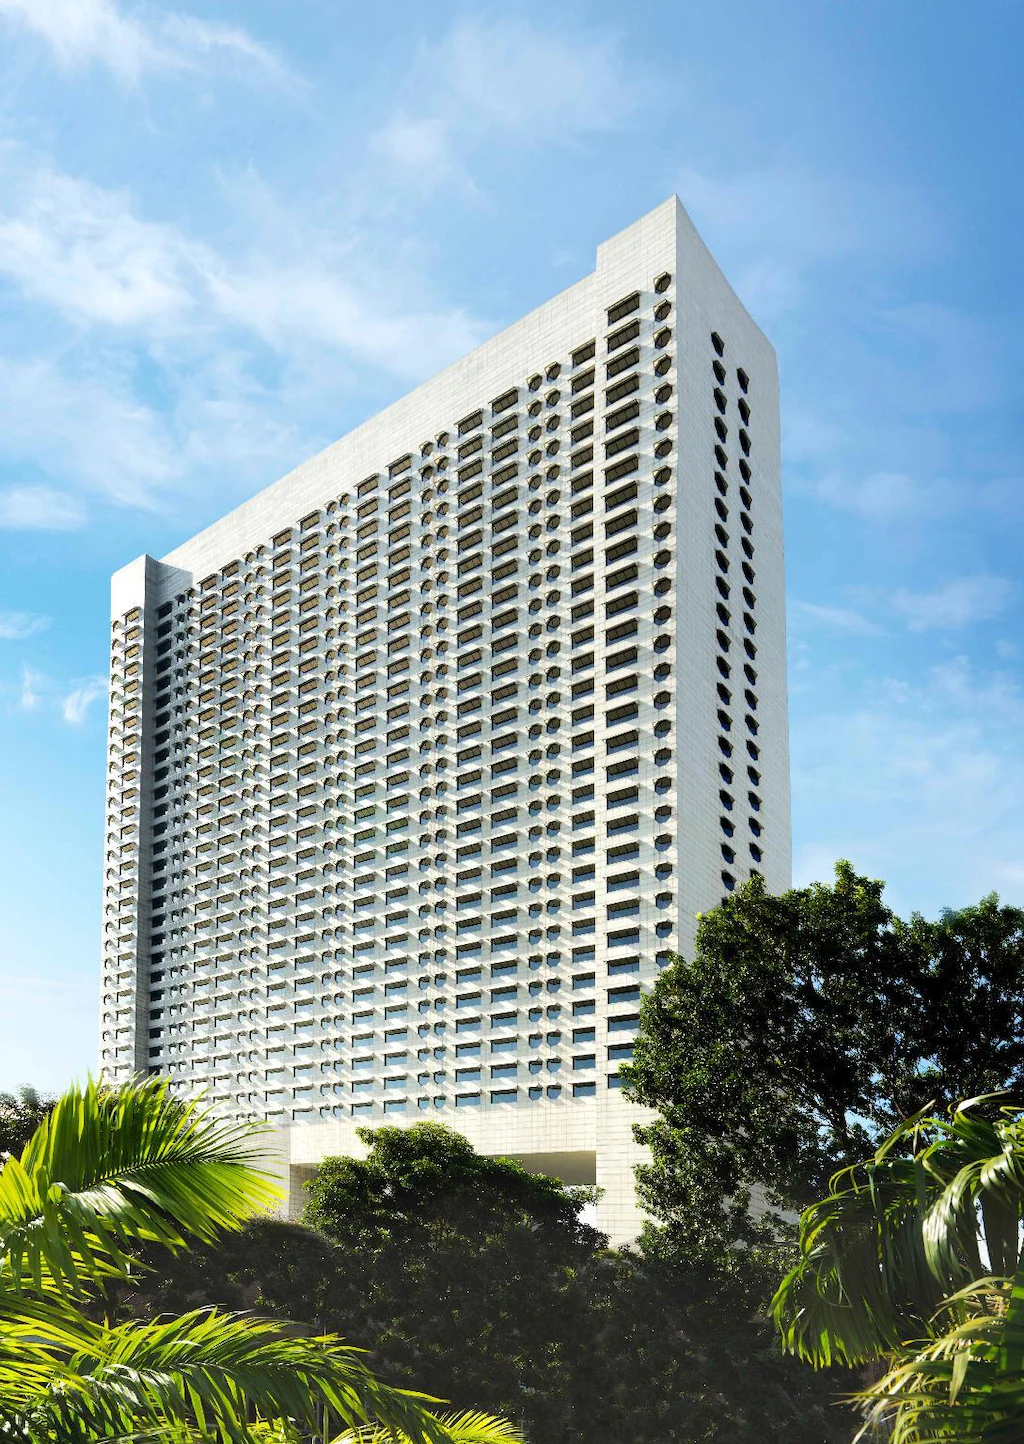 เดอะ ริตซ์-คาร์ลตัน มิลเลเนีย สิงคโปร์
(The Ritz-Carlton, Millenia Singapore)